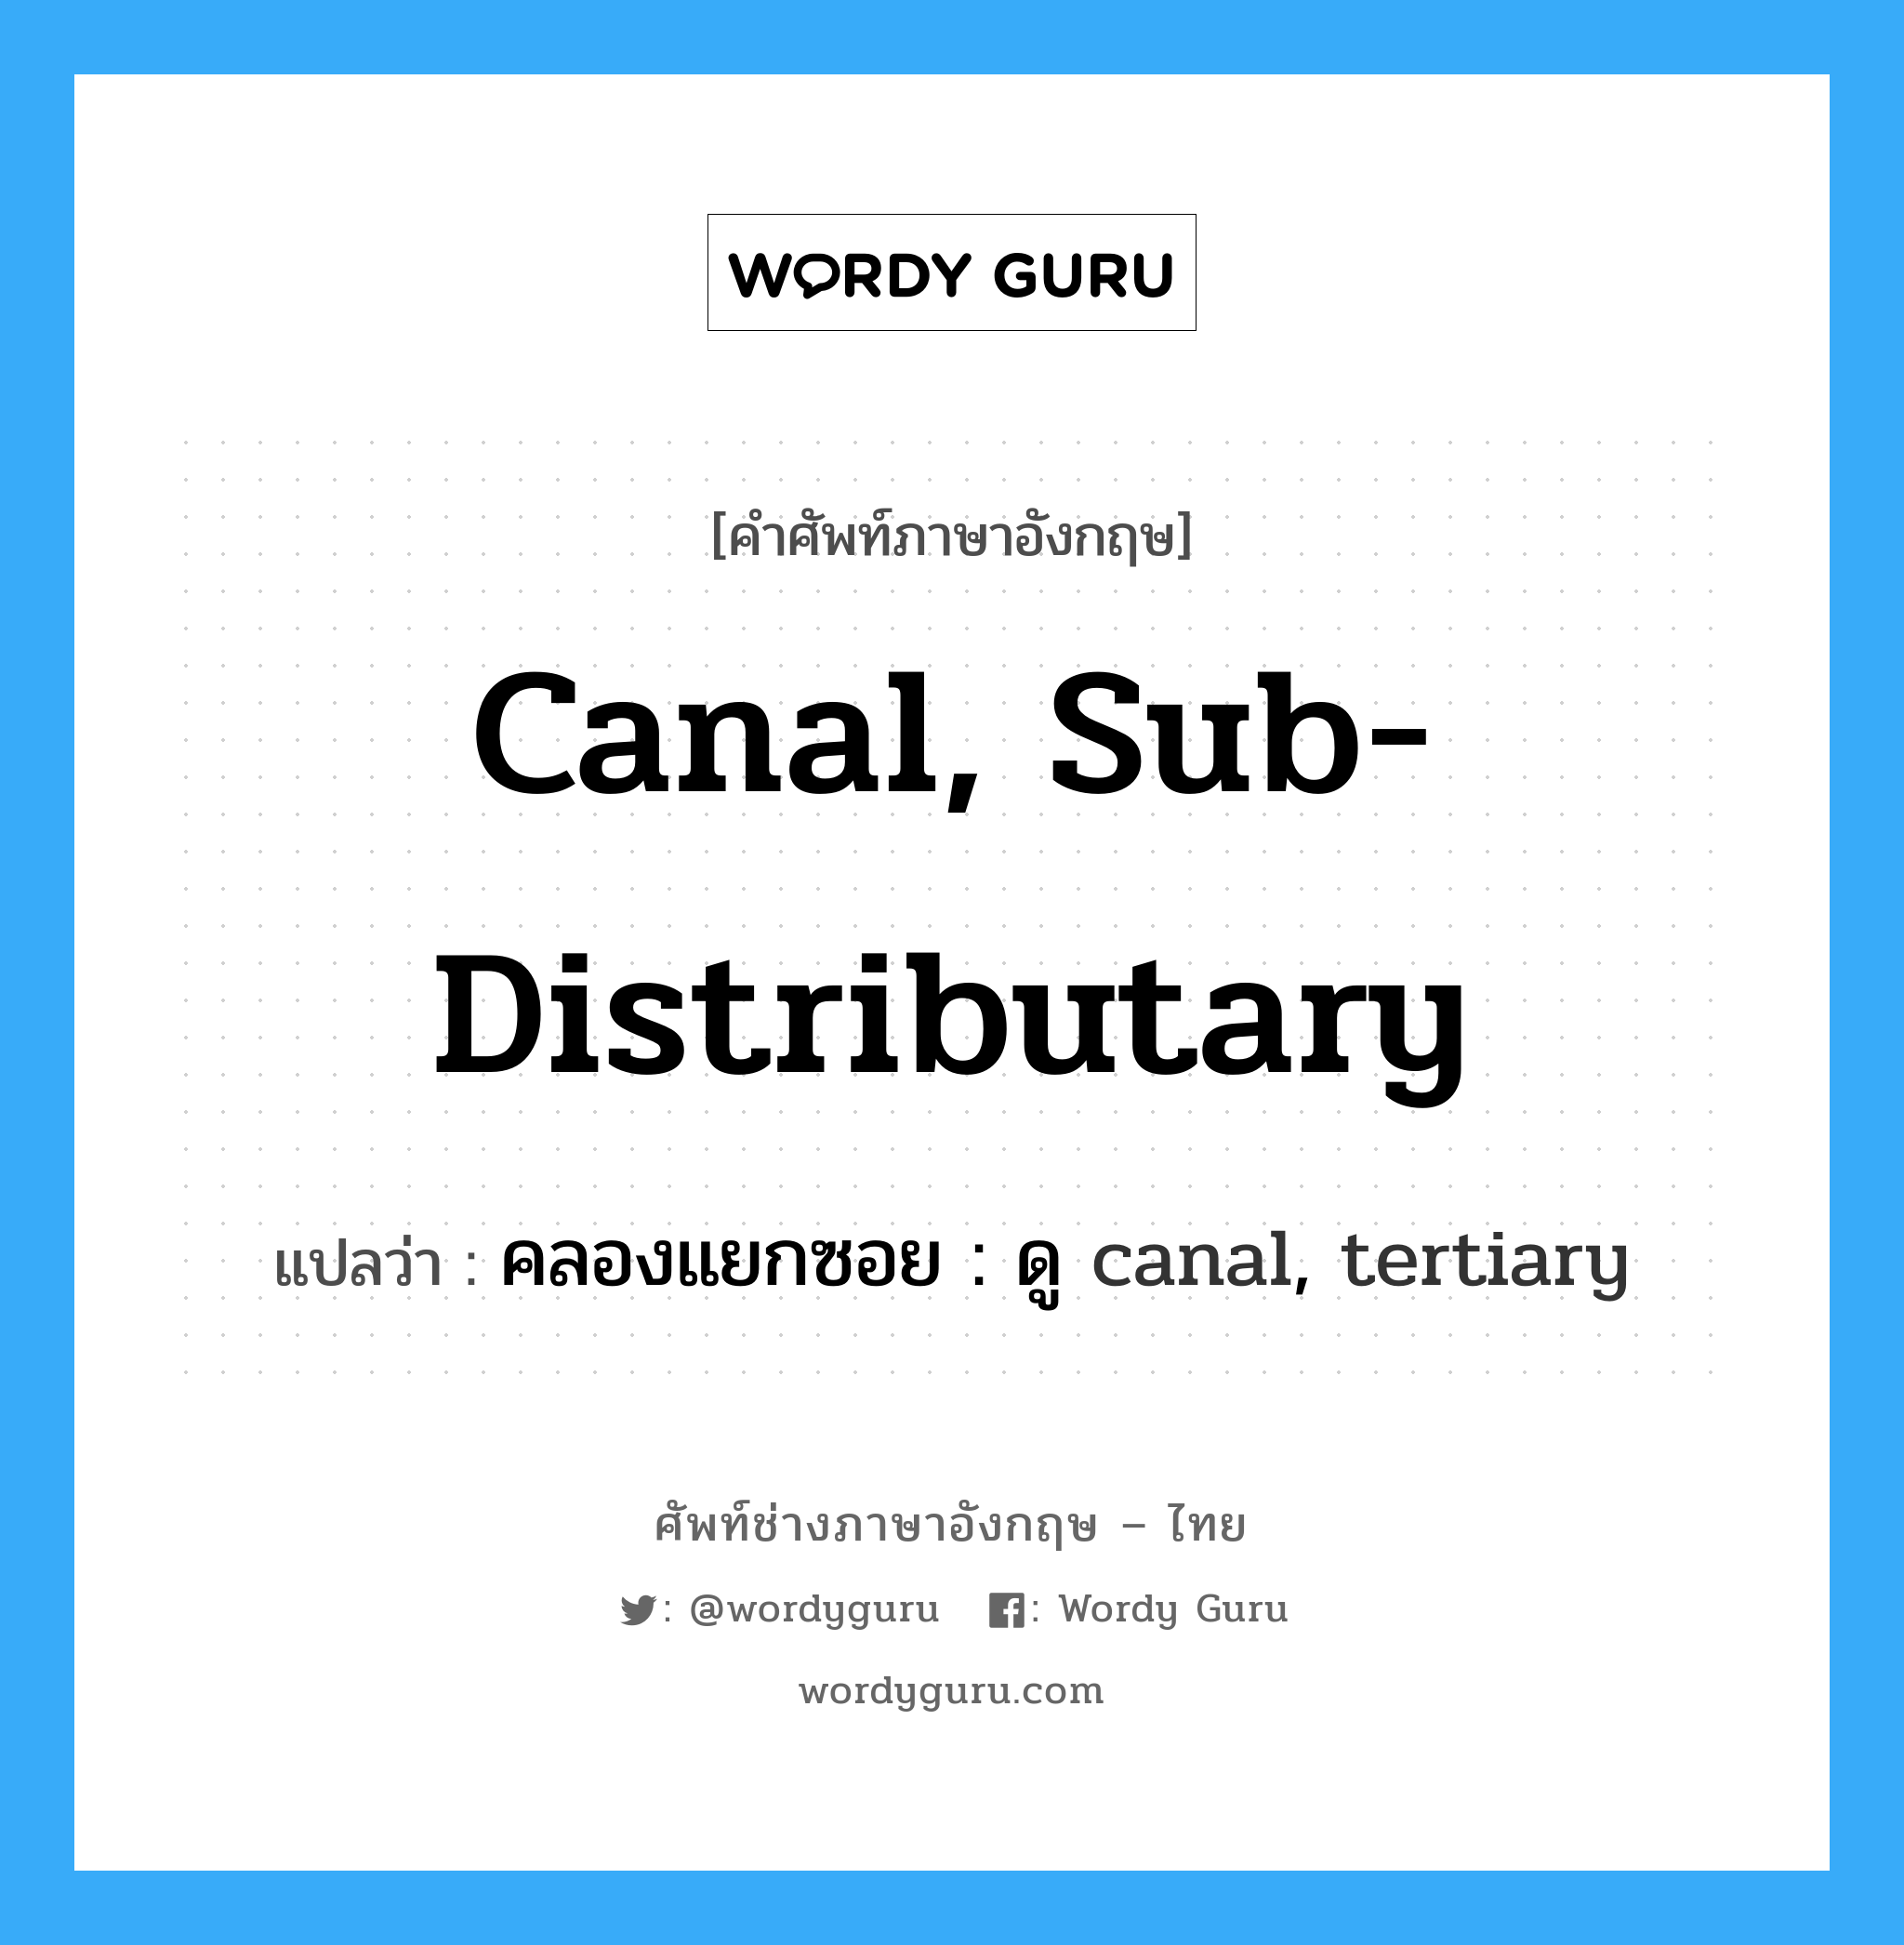 คลองแยกซอย : ดู canal, tertiary ภาษาอังกฤษ?, คำศัพท์ช่างภาษาอังกฤษ - ไทย คลองแยกซอย : ดู canal, tertiary คำศัพท์ภาษาอังกฤษ คลองแยกซอย : ดู canal, tertiary แปลว่า canal, sub-distributary